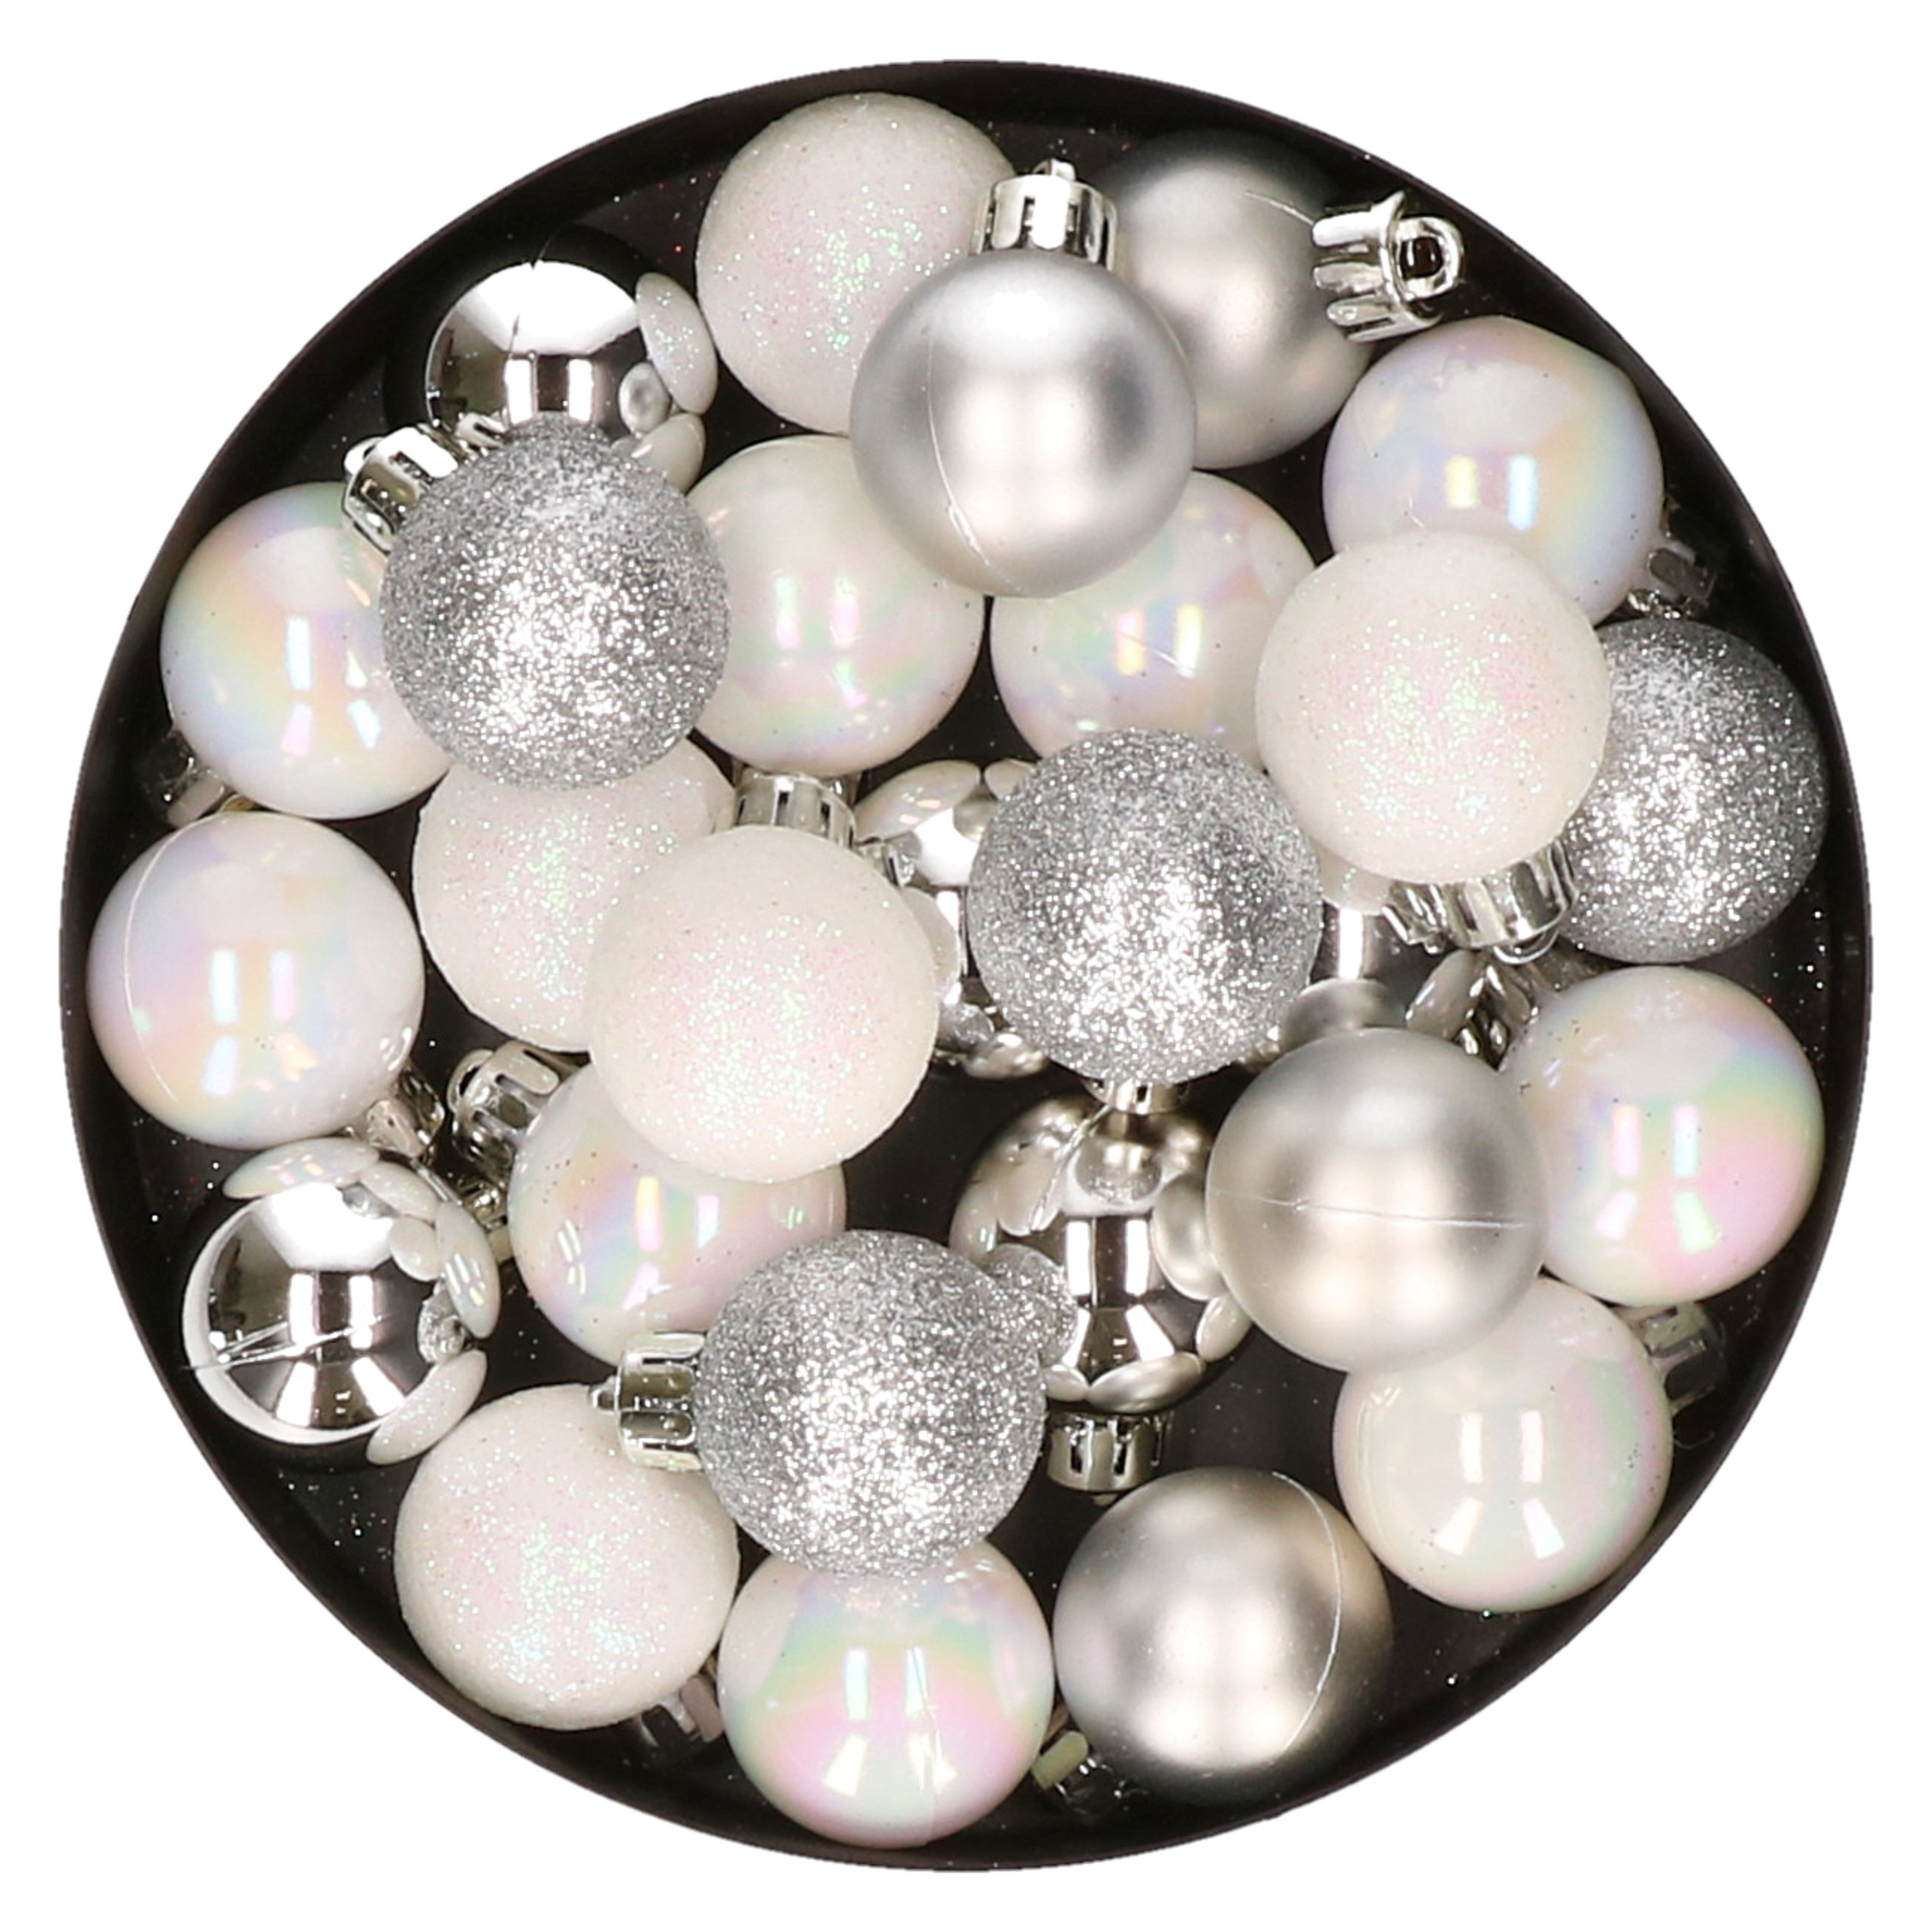 28x stuks kunststof kerstballen parelmoer wit en zilver mix 3 cm